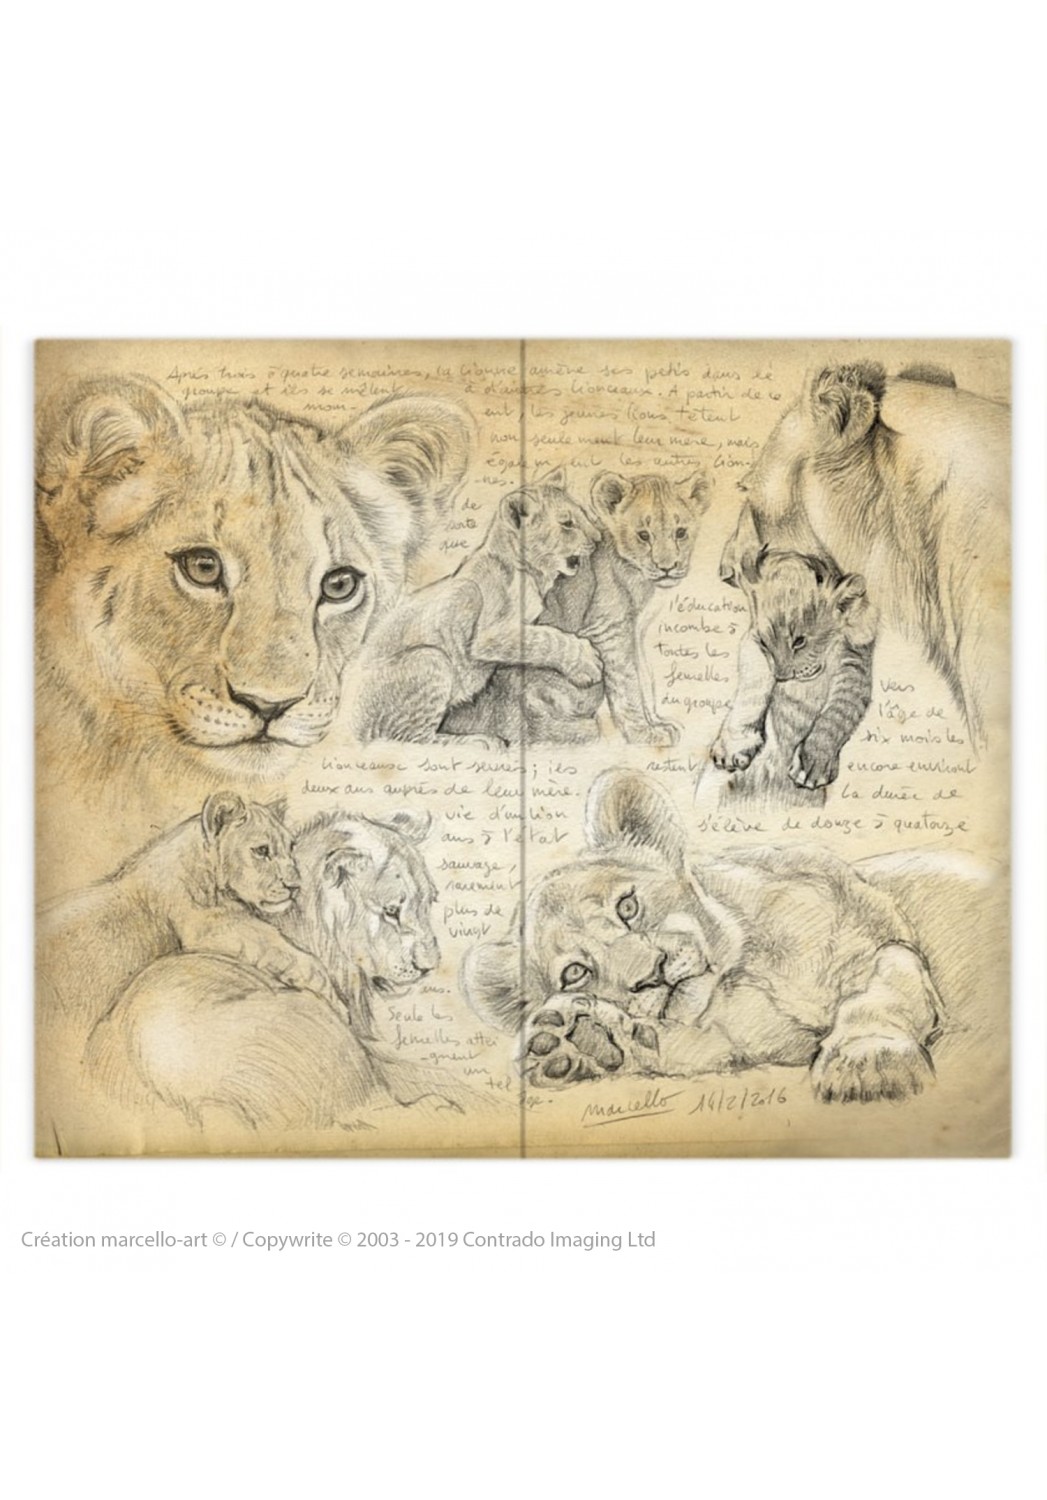 Marcello-art: Fashion accessory Duvet cover 330 lion cubs